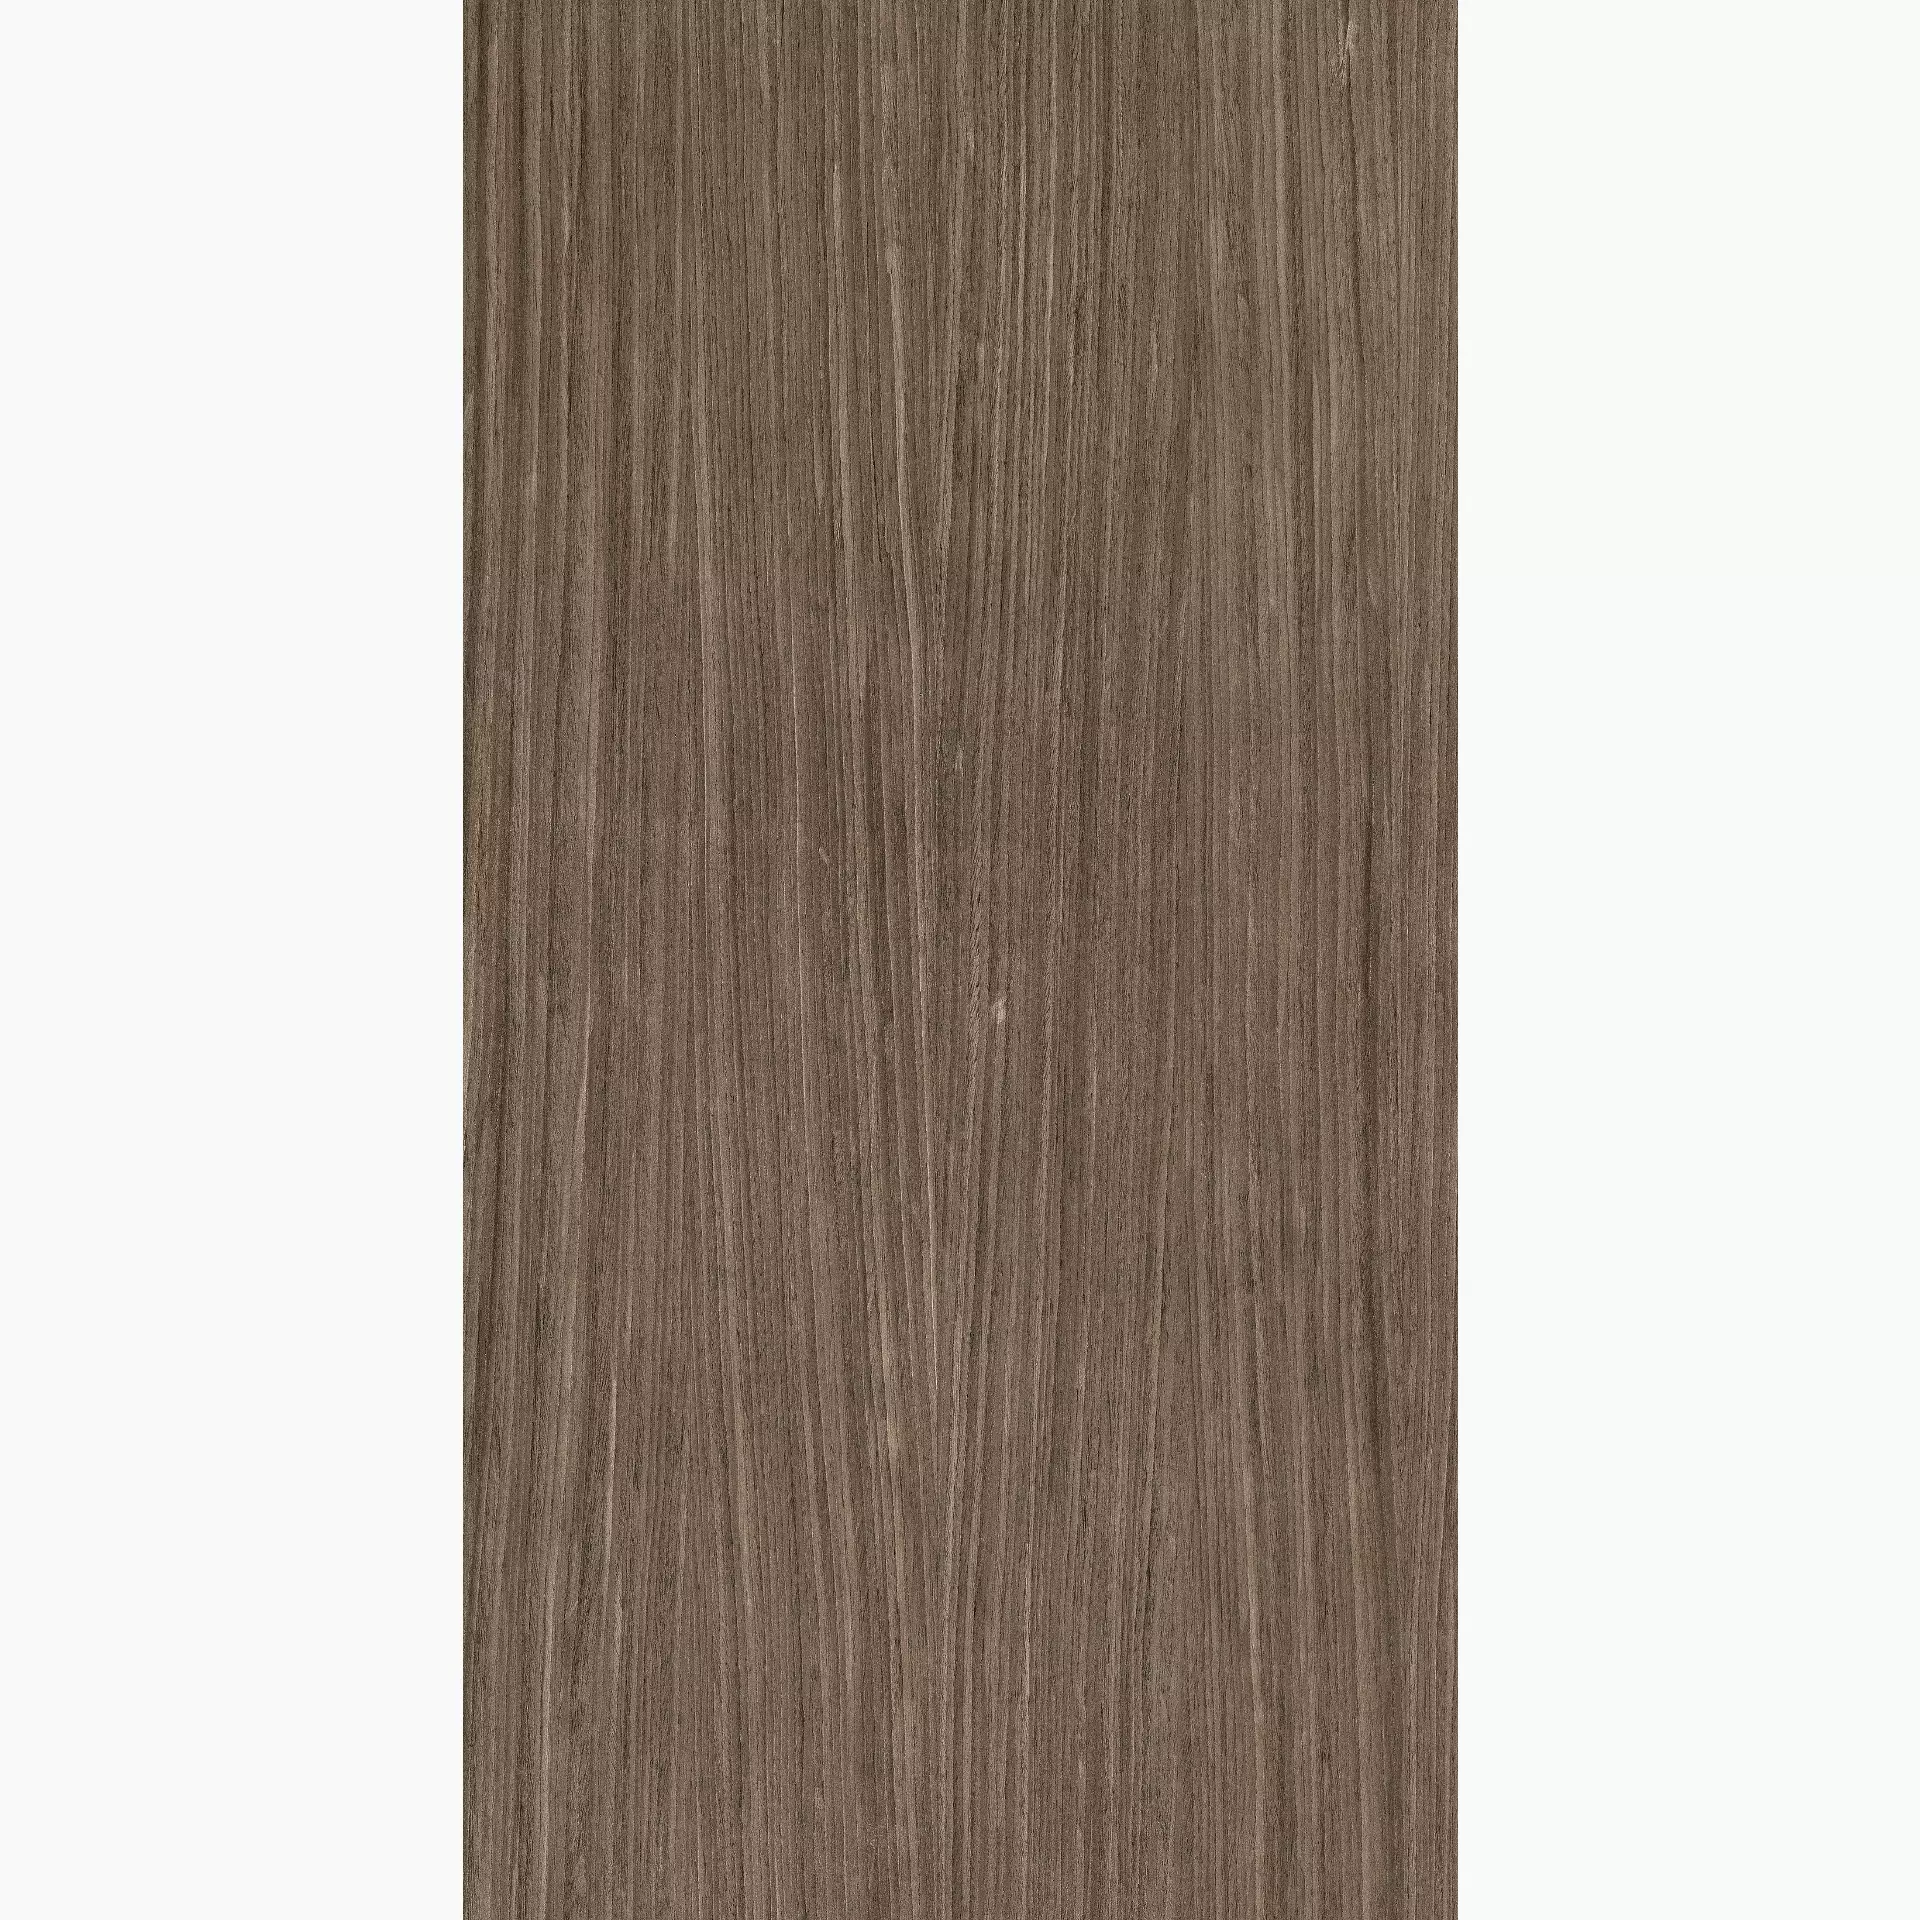 Florim Nature Mood Plank 02 Comfort Plank 02 774897 matt rutschhemmend 60x120cm rektifiziert 6mm